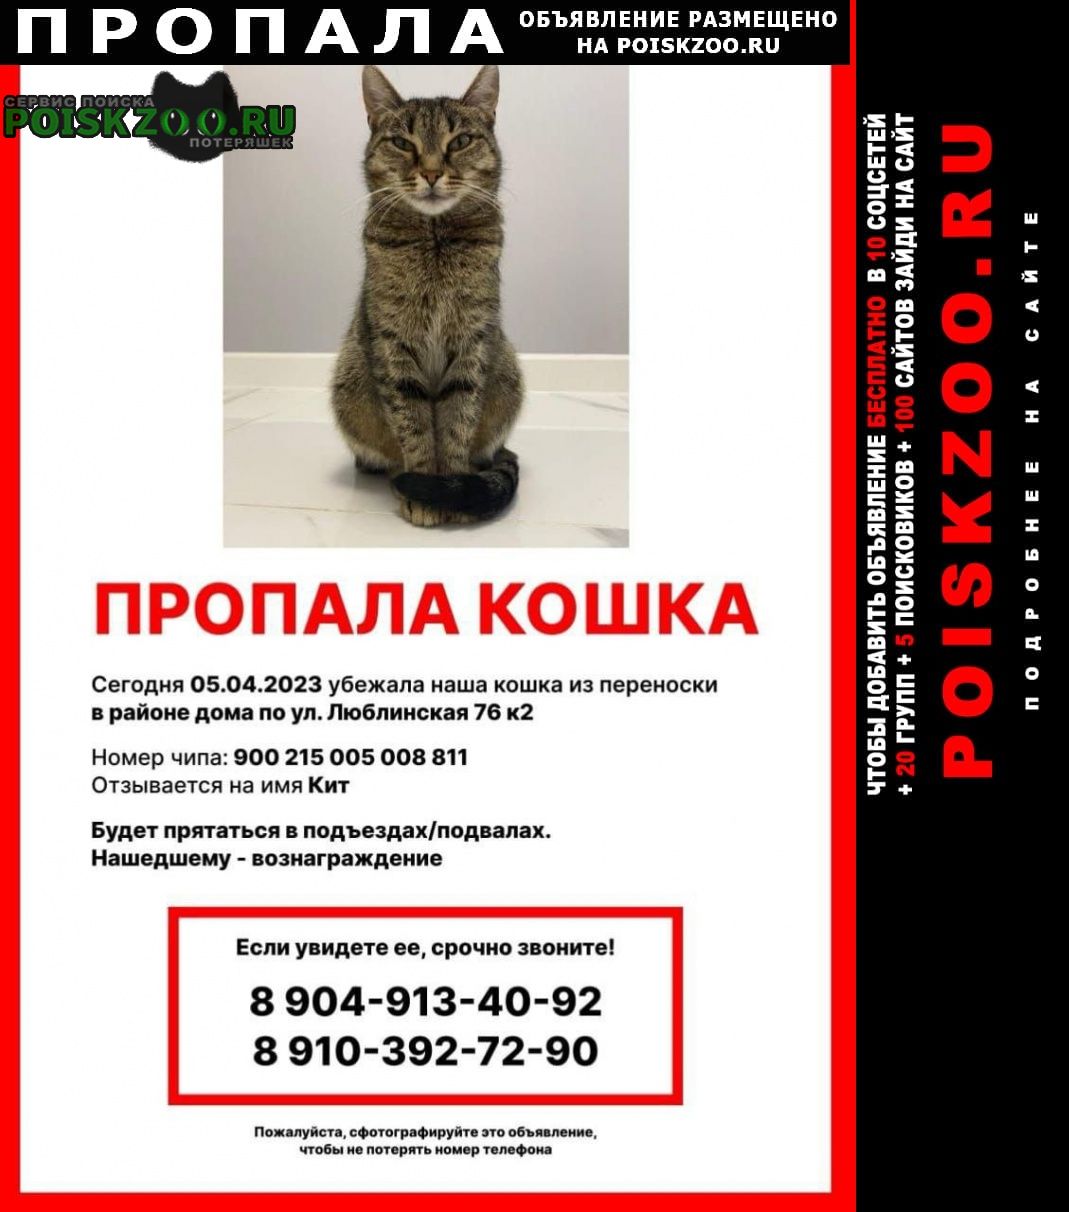 Москва Пропала кошка вознаграждение 5000